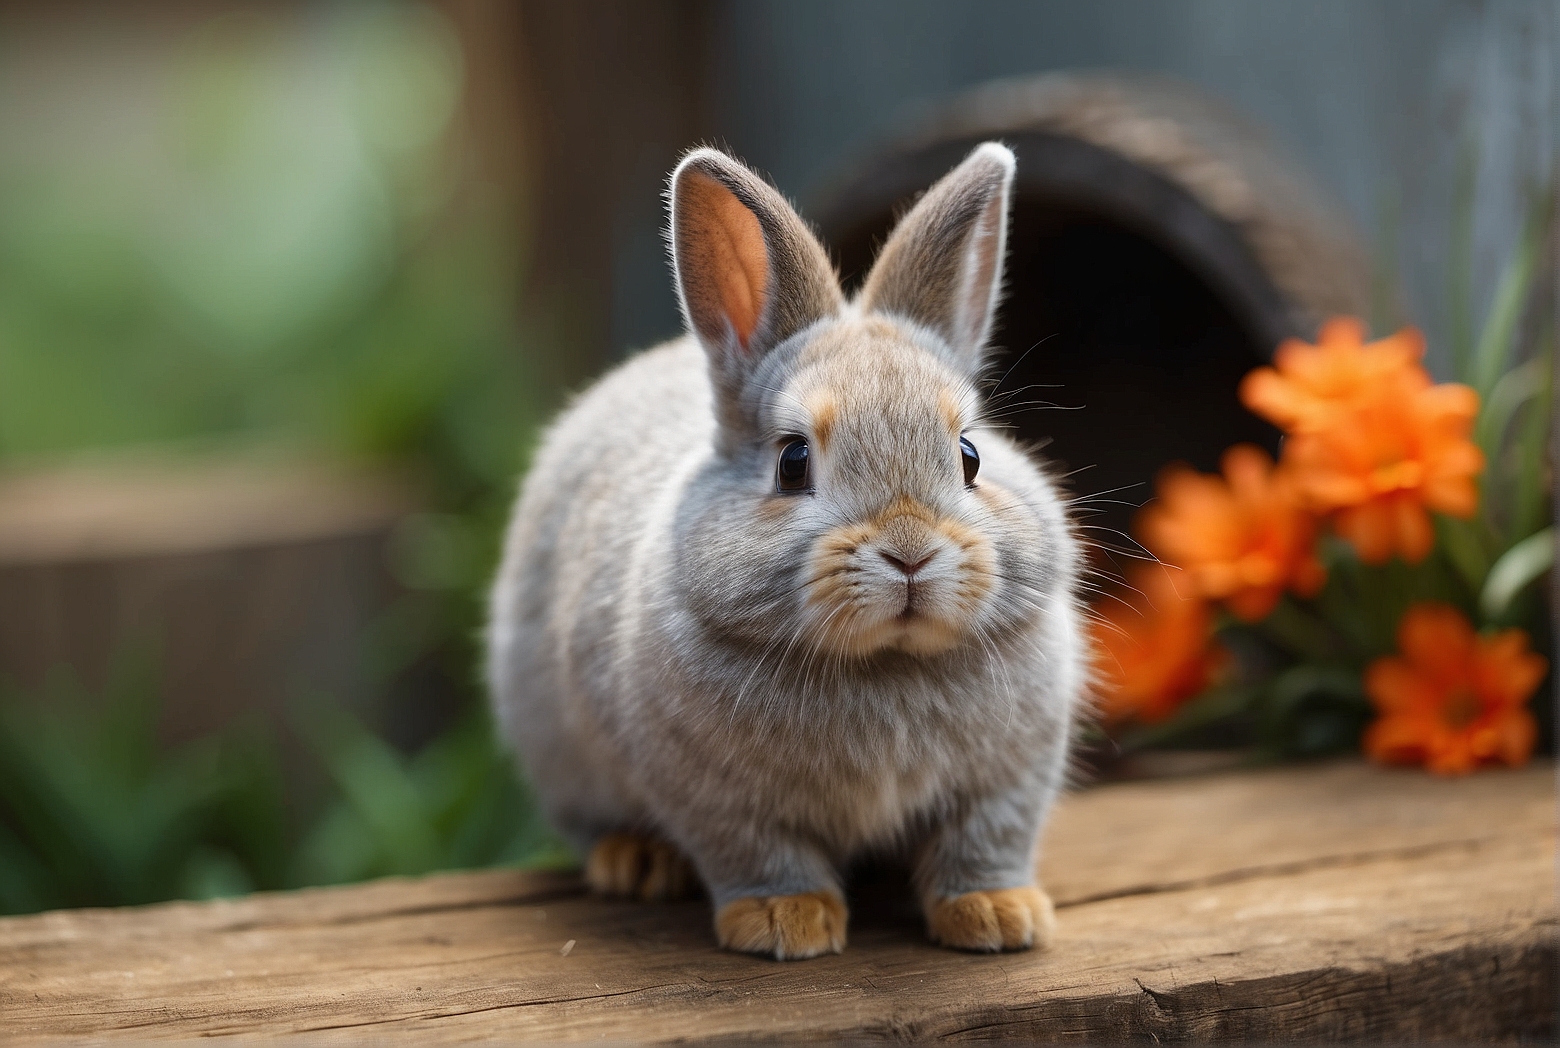 Is a Netherland Dwarf Rabbit a Good Pet?